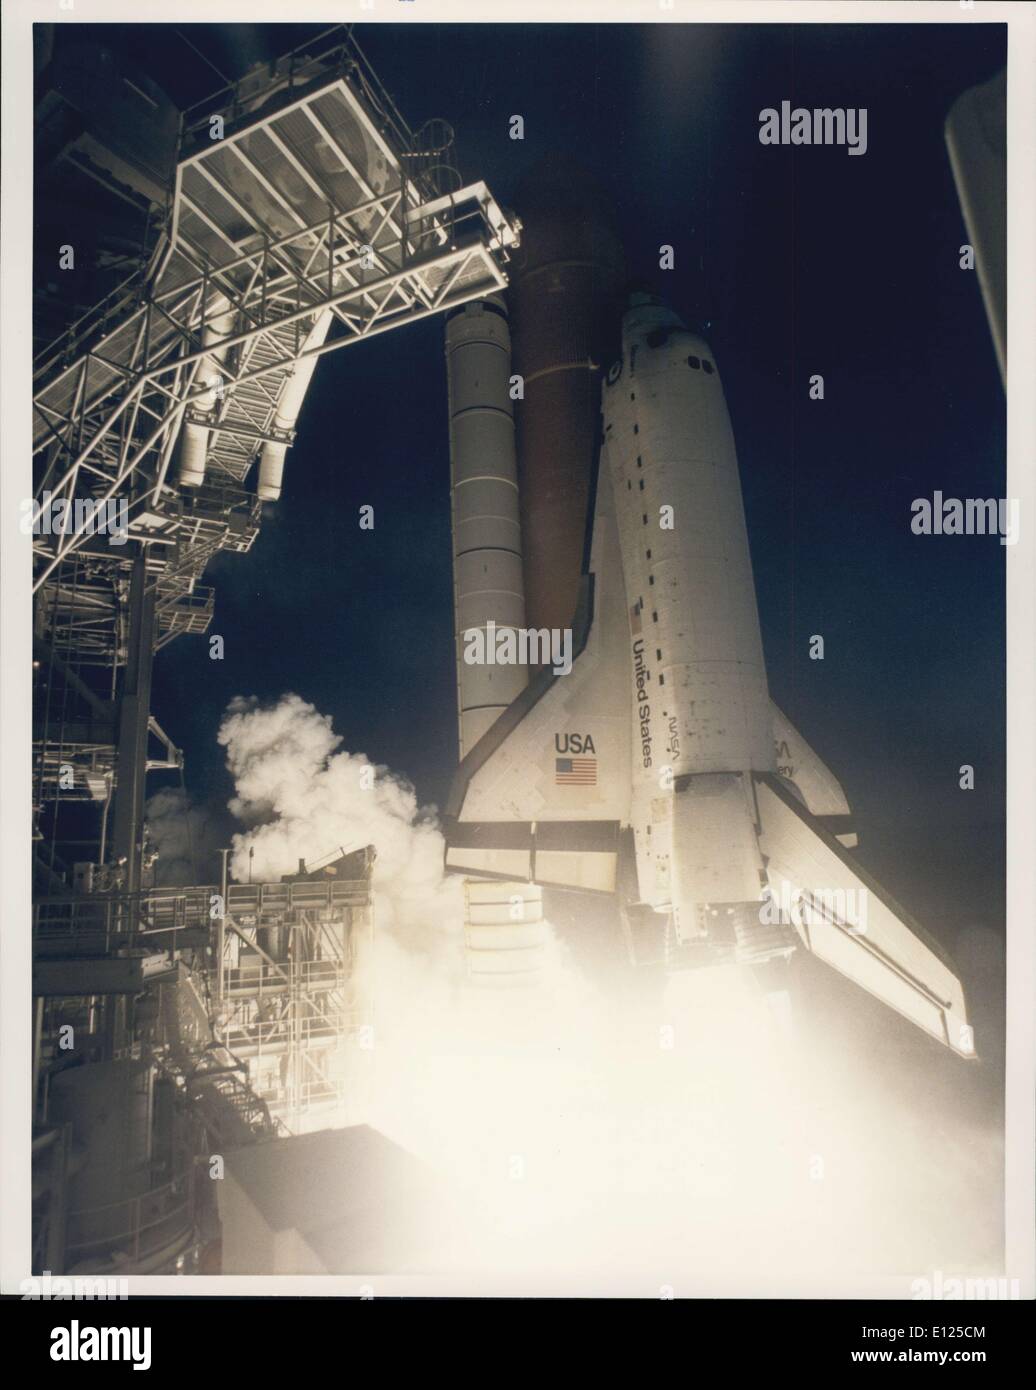 Febbraio 03, 1994 - Il Centro Spaziale Kennedy, FLA. - Un golden nuova era in cooperazione spaziale inizia con un conto alla rovescia di impeccabile e il ontime il decollo della navetta spaziale Discovery per la missione STS-60. Il decollo da Launch Pad 39A è avvenuta a 7:10:01 a.m., EST. La prima missione Shuttle di 1994 porta il primo cosmonauta russo, Sergei K. Krikalev, di volare sullo Space Shuttle. Il veterano space traveler si unisce gli astronauti N. Jan Davis e Ronald M. Sega, gli specialisti di missione; Franklin R. Chang-Diaz, payload commander: Kenneth S. Reightler, pilota; e Charles F. Bolden Jr Foto Stock